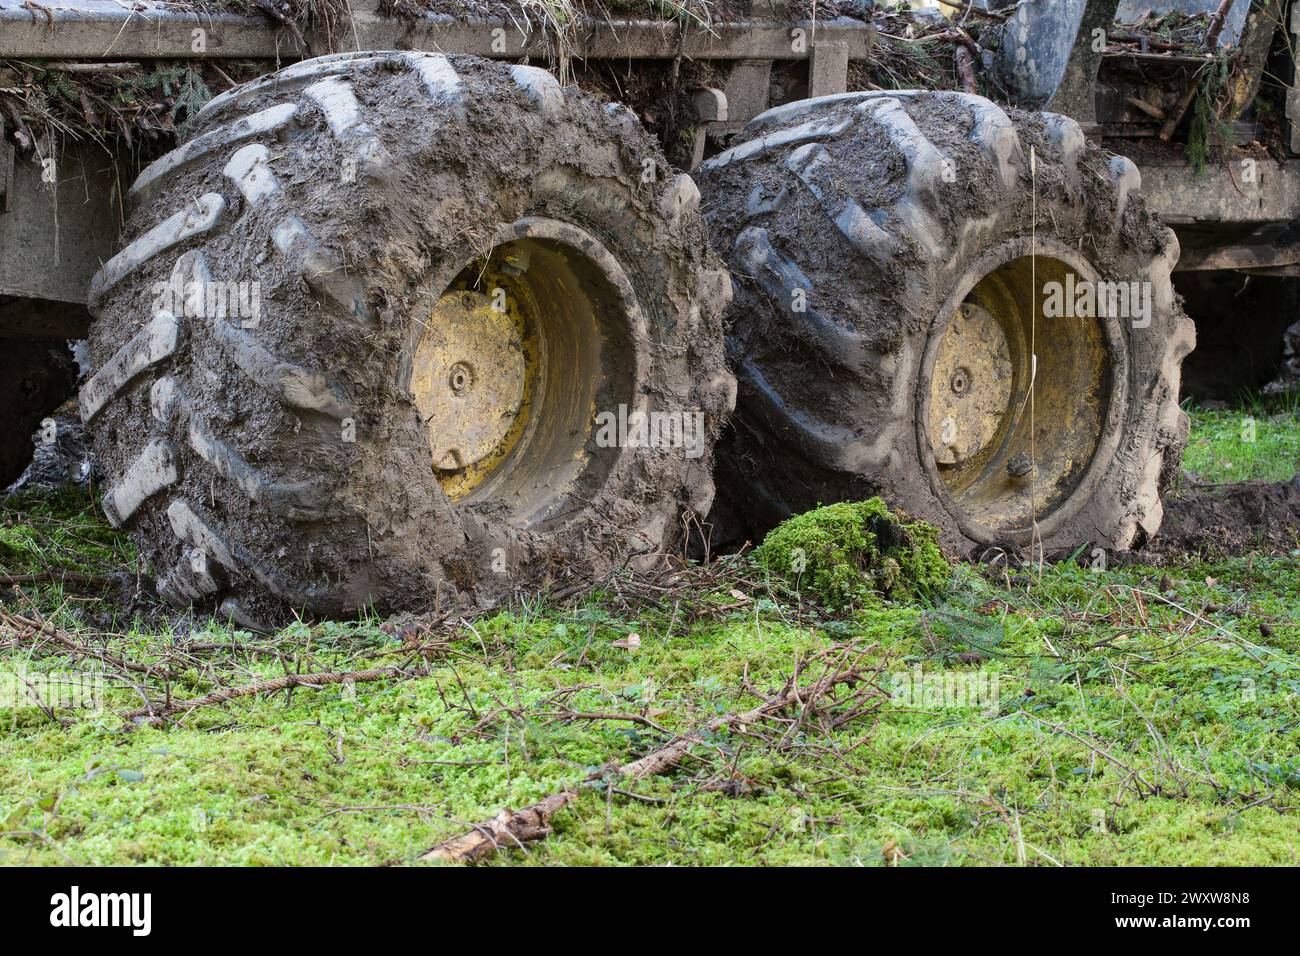 Des pneus profondément enfoncés révèlent l'impact de la machinerie forestière lourde sur le sol forestier. La perturbation du sol due au compactage est indéniable. Banque D'Images